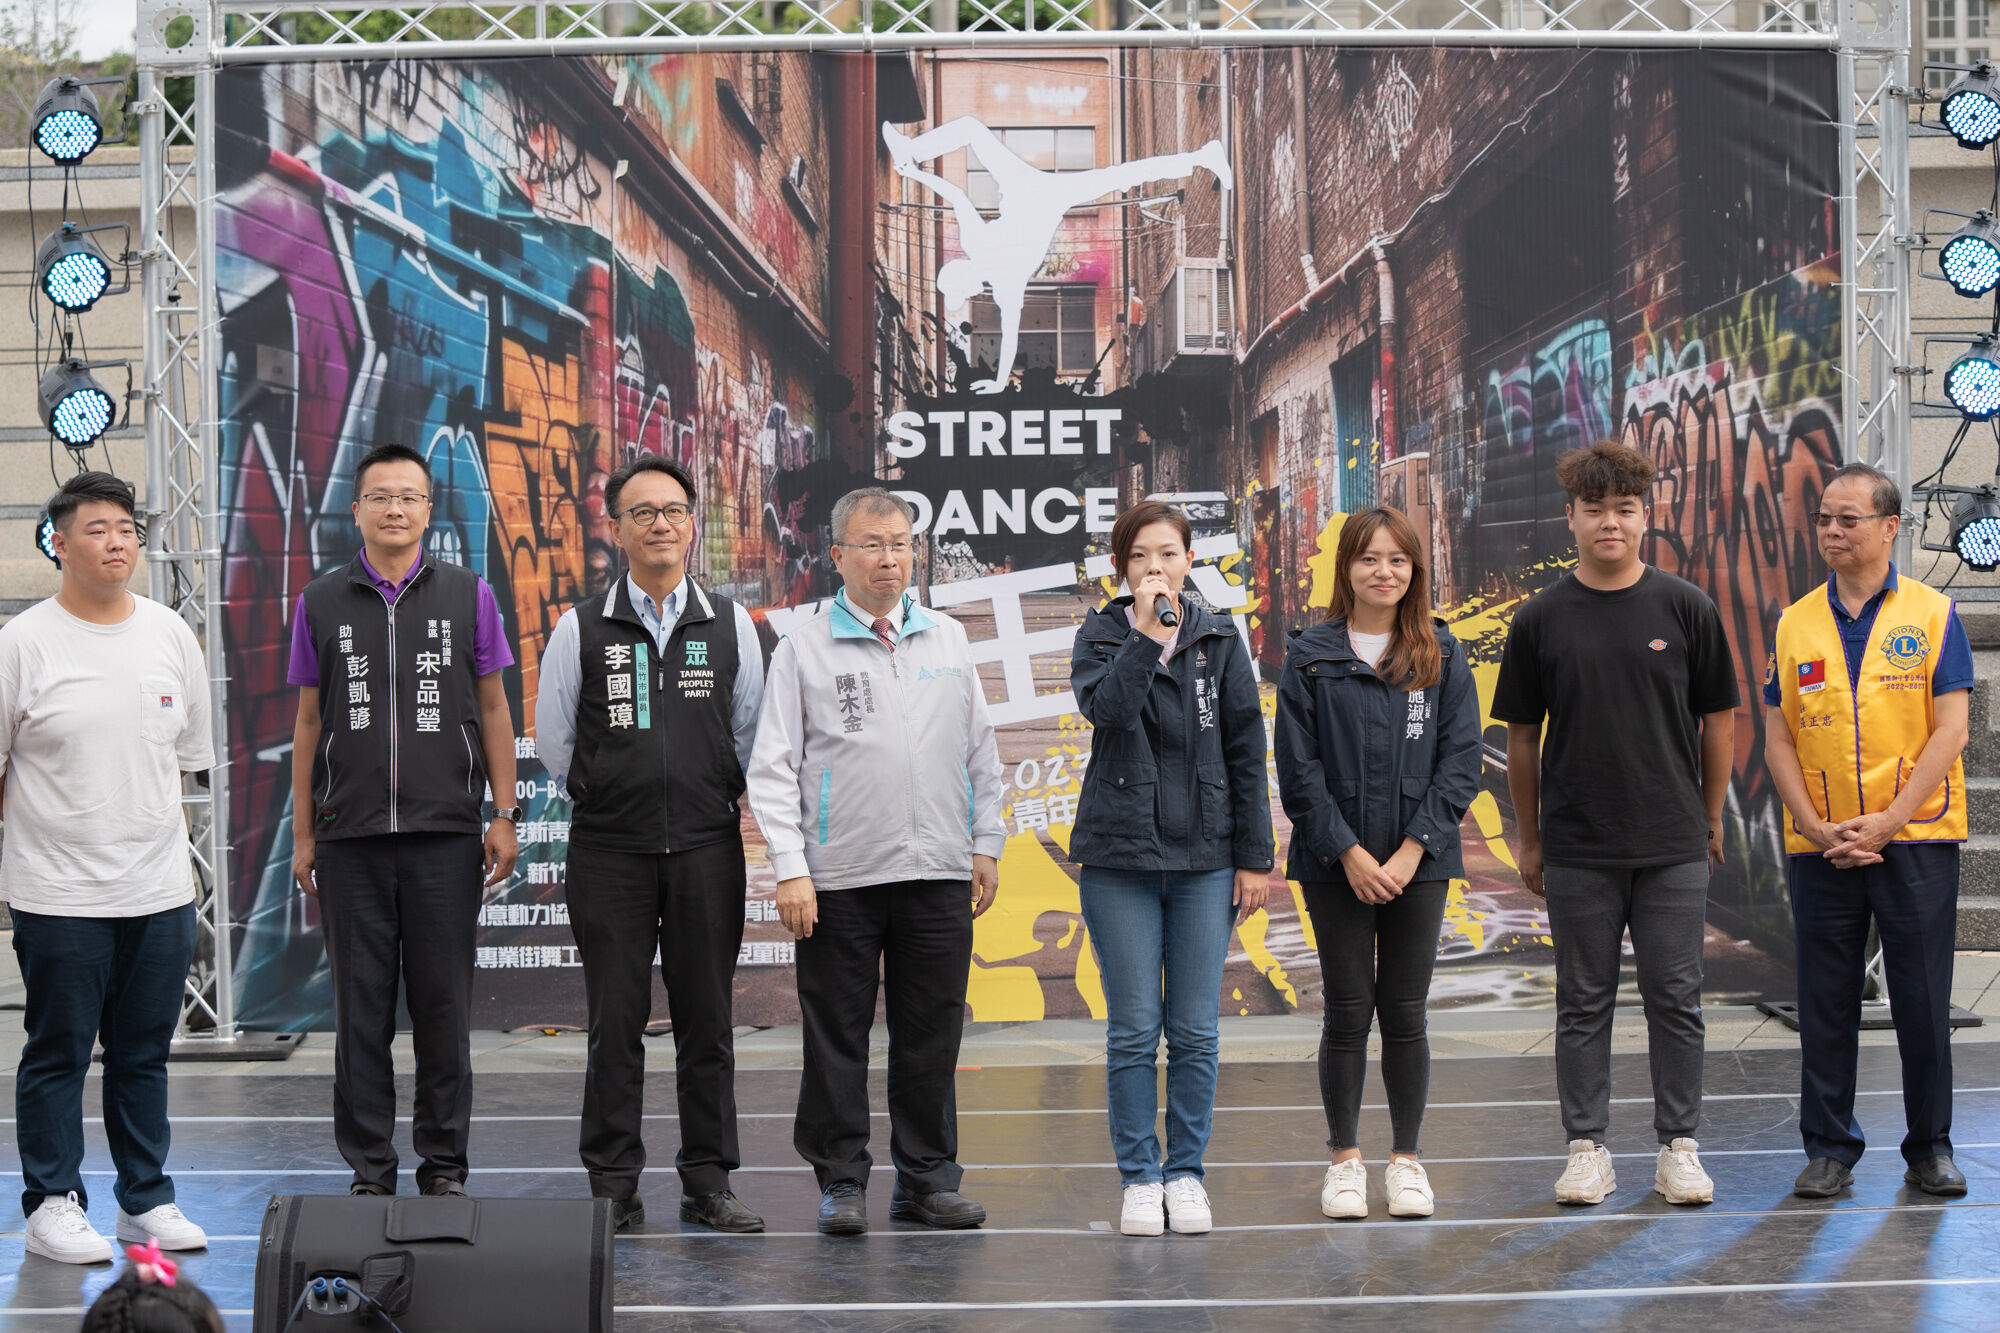 竹市獅王盃反霸凌街舞大賽登場 高市長：提倡街舞文化、展現青年活力！